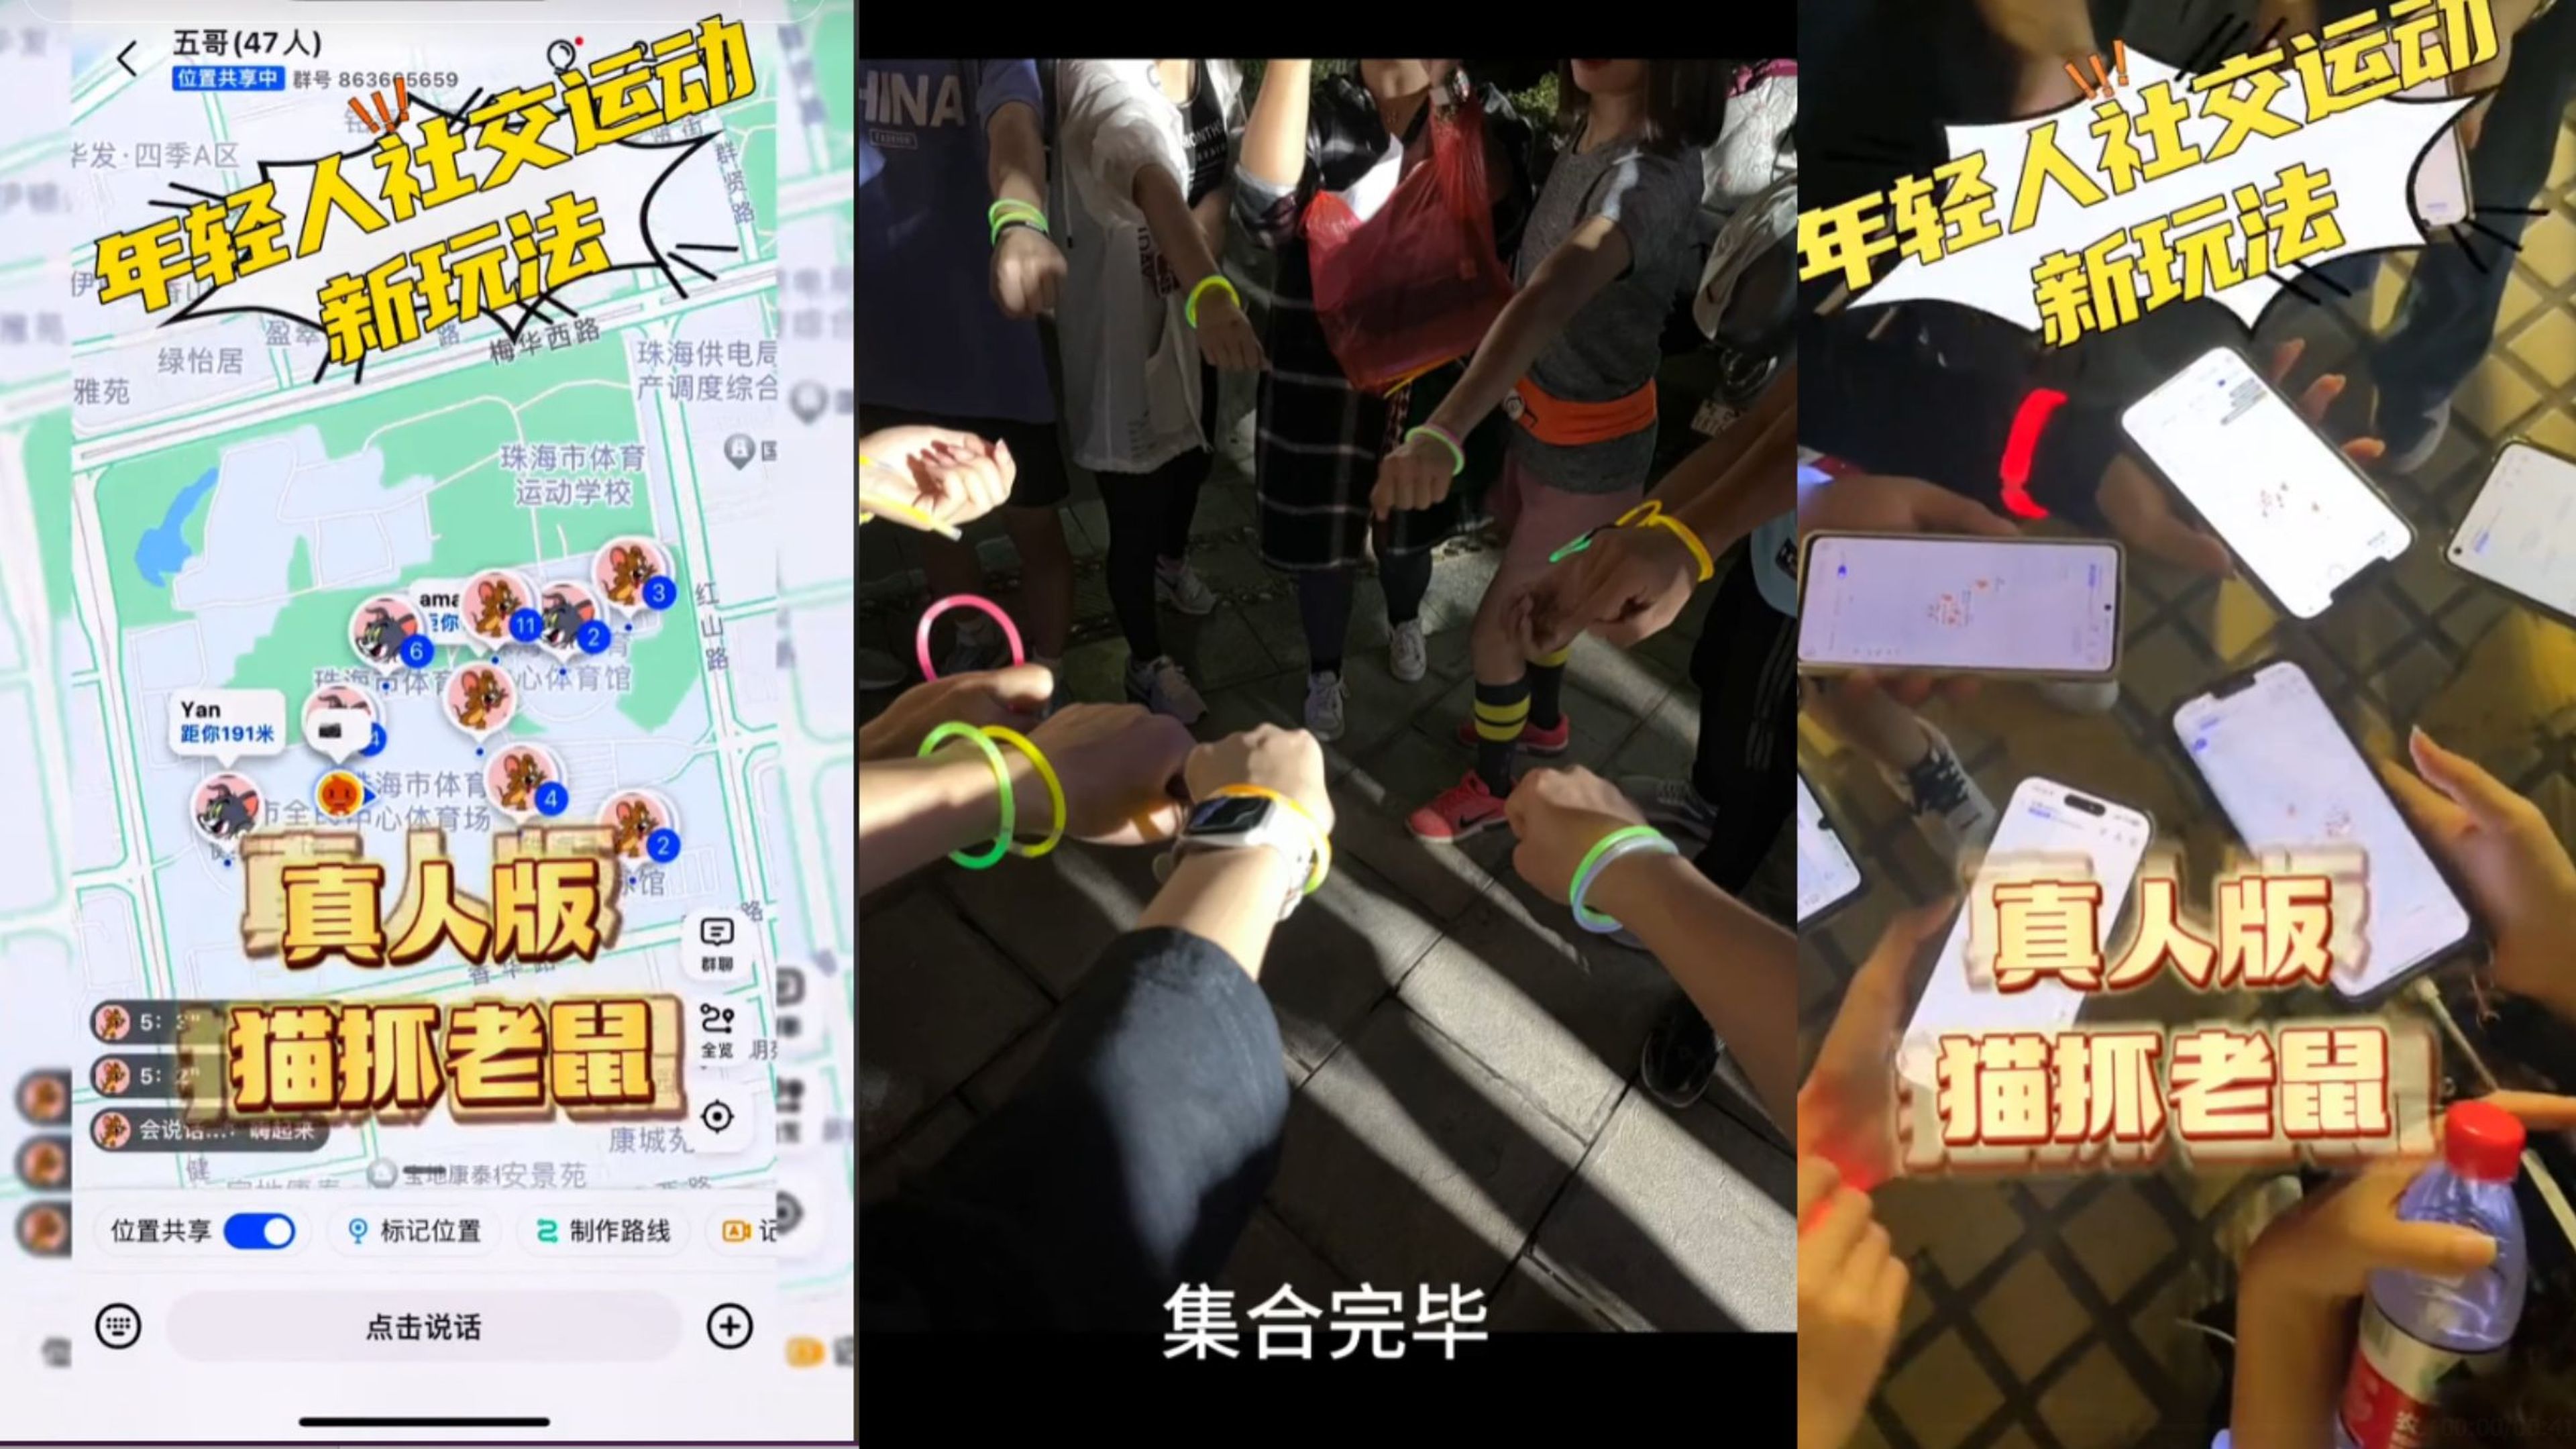 El escondite en un parque entre desconocidos  y usando el Google Maps chino: el juego de moda y más viral en Hong Kong